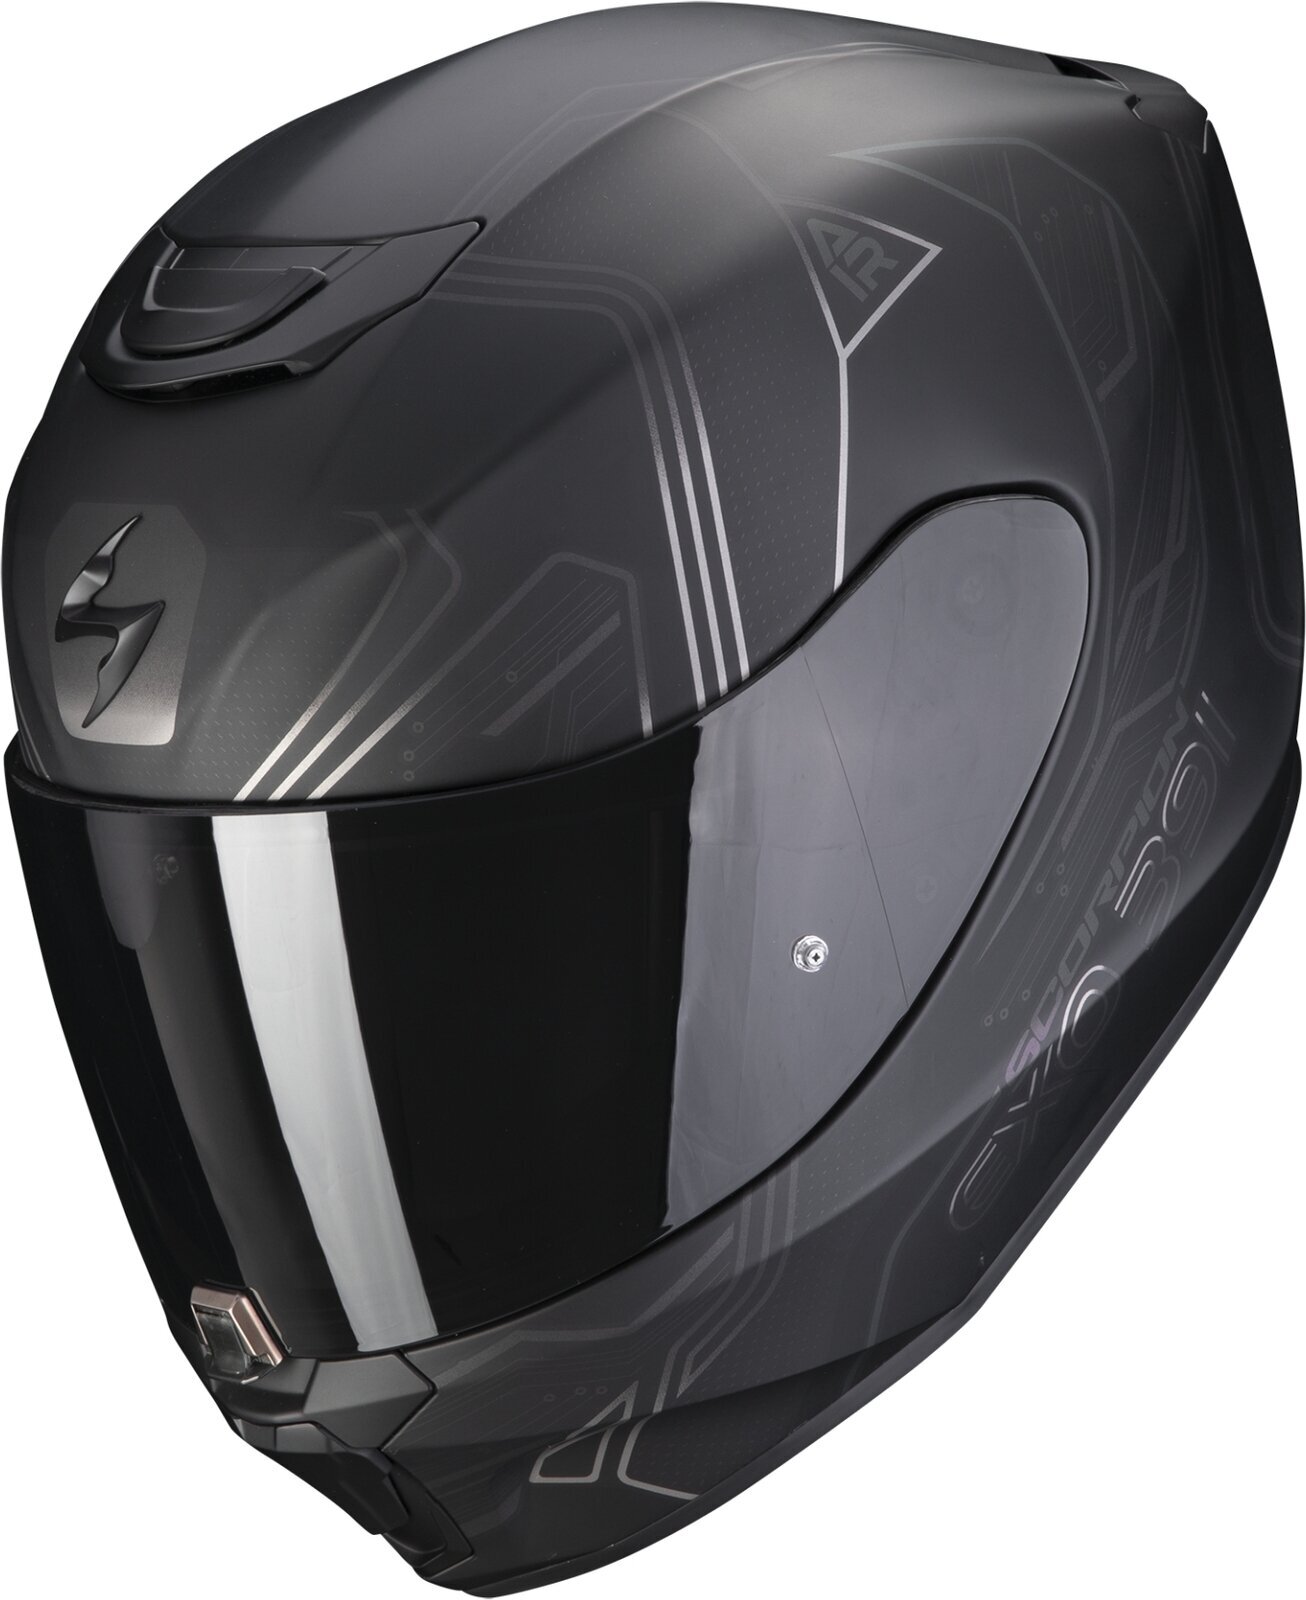 Helmet Scorpion EXO 391 SPADA Matt Black/Chameleon S Helmet